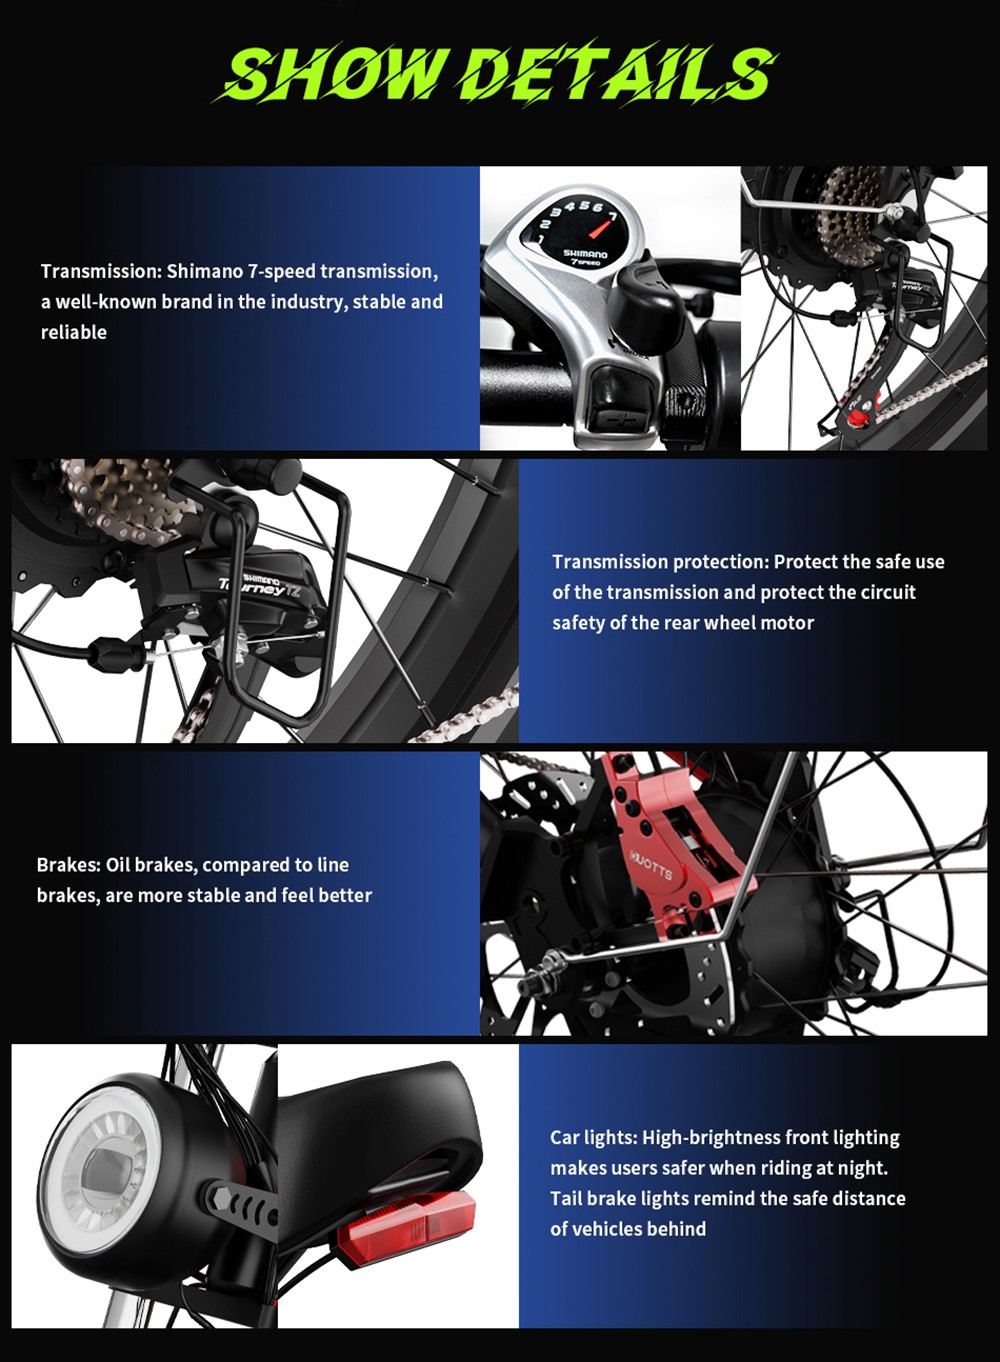 DUOTTS N26 elektromos kerékpár, 750 W*2 motor, 55 km/h maximális sebesség, 26*4.0